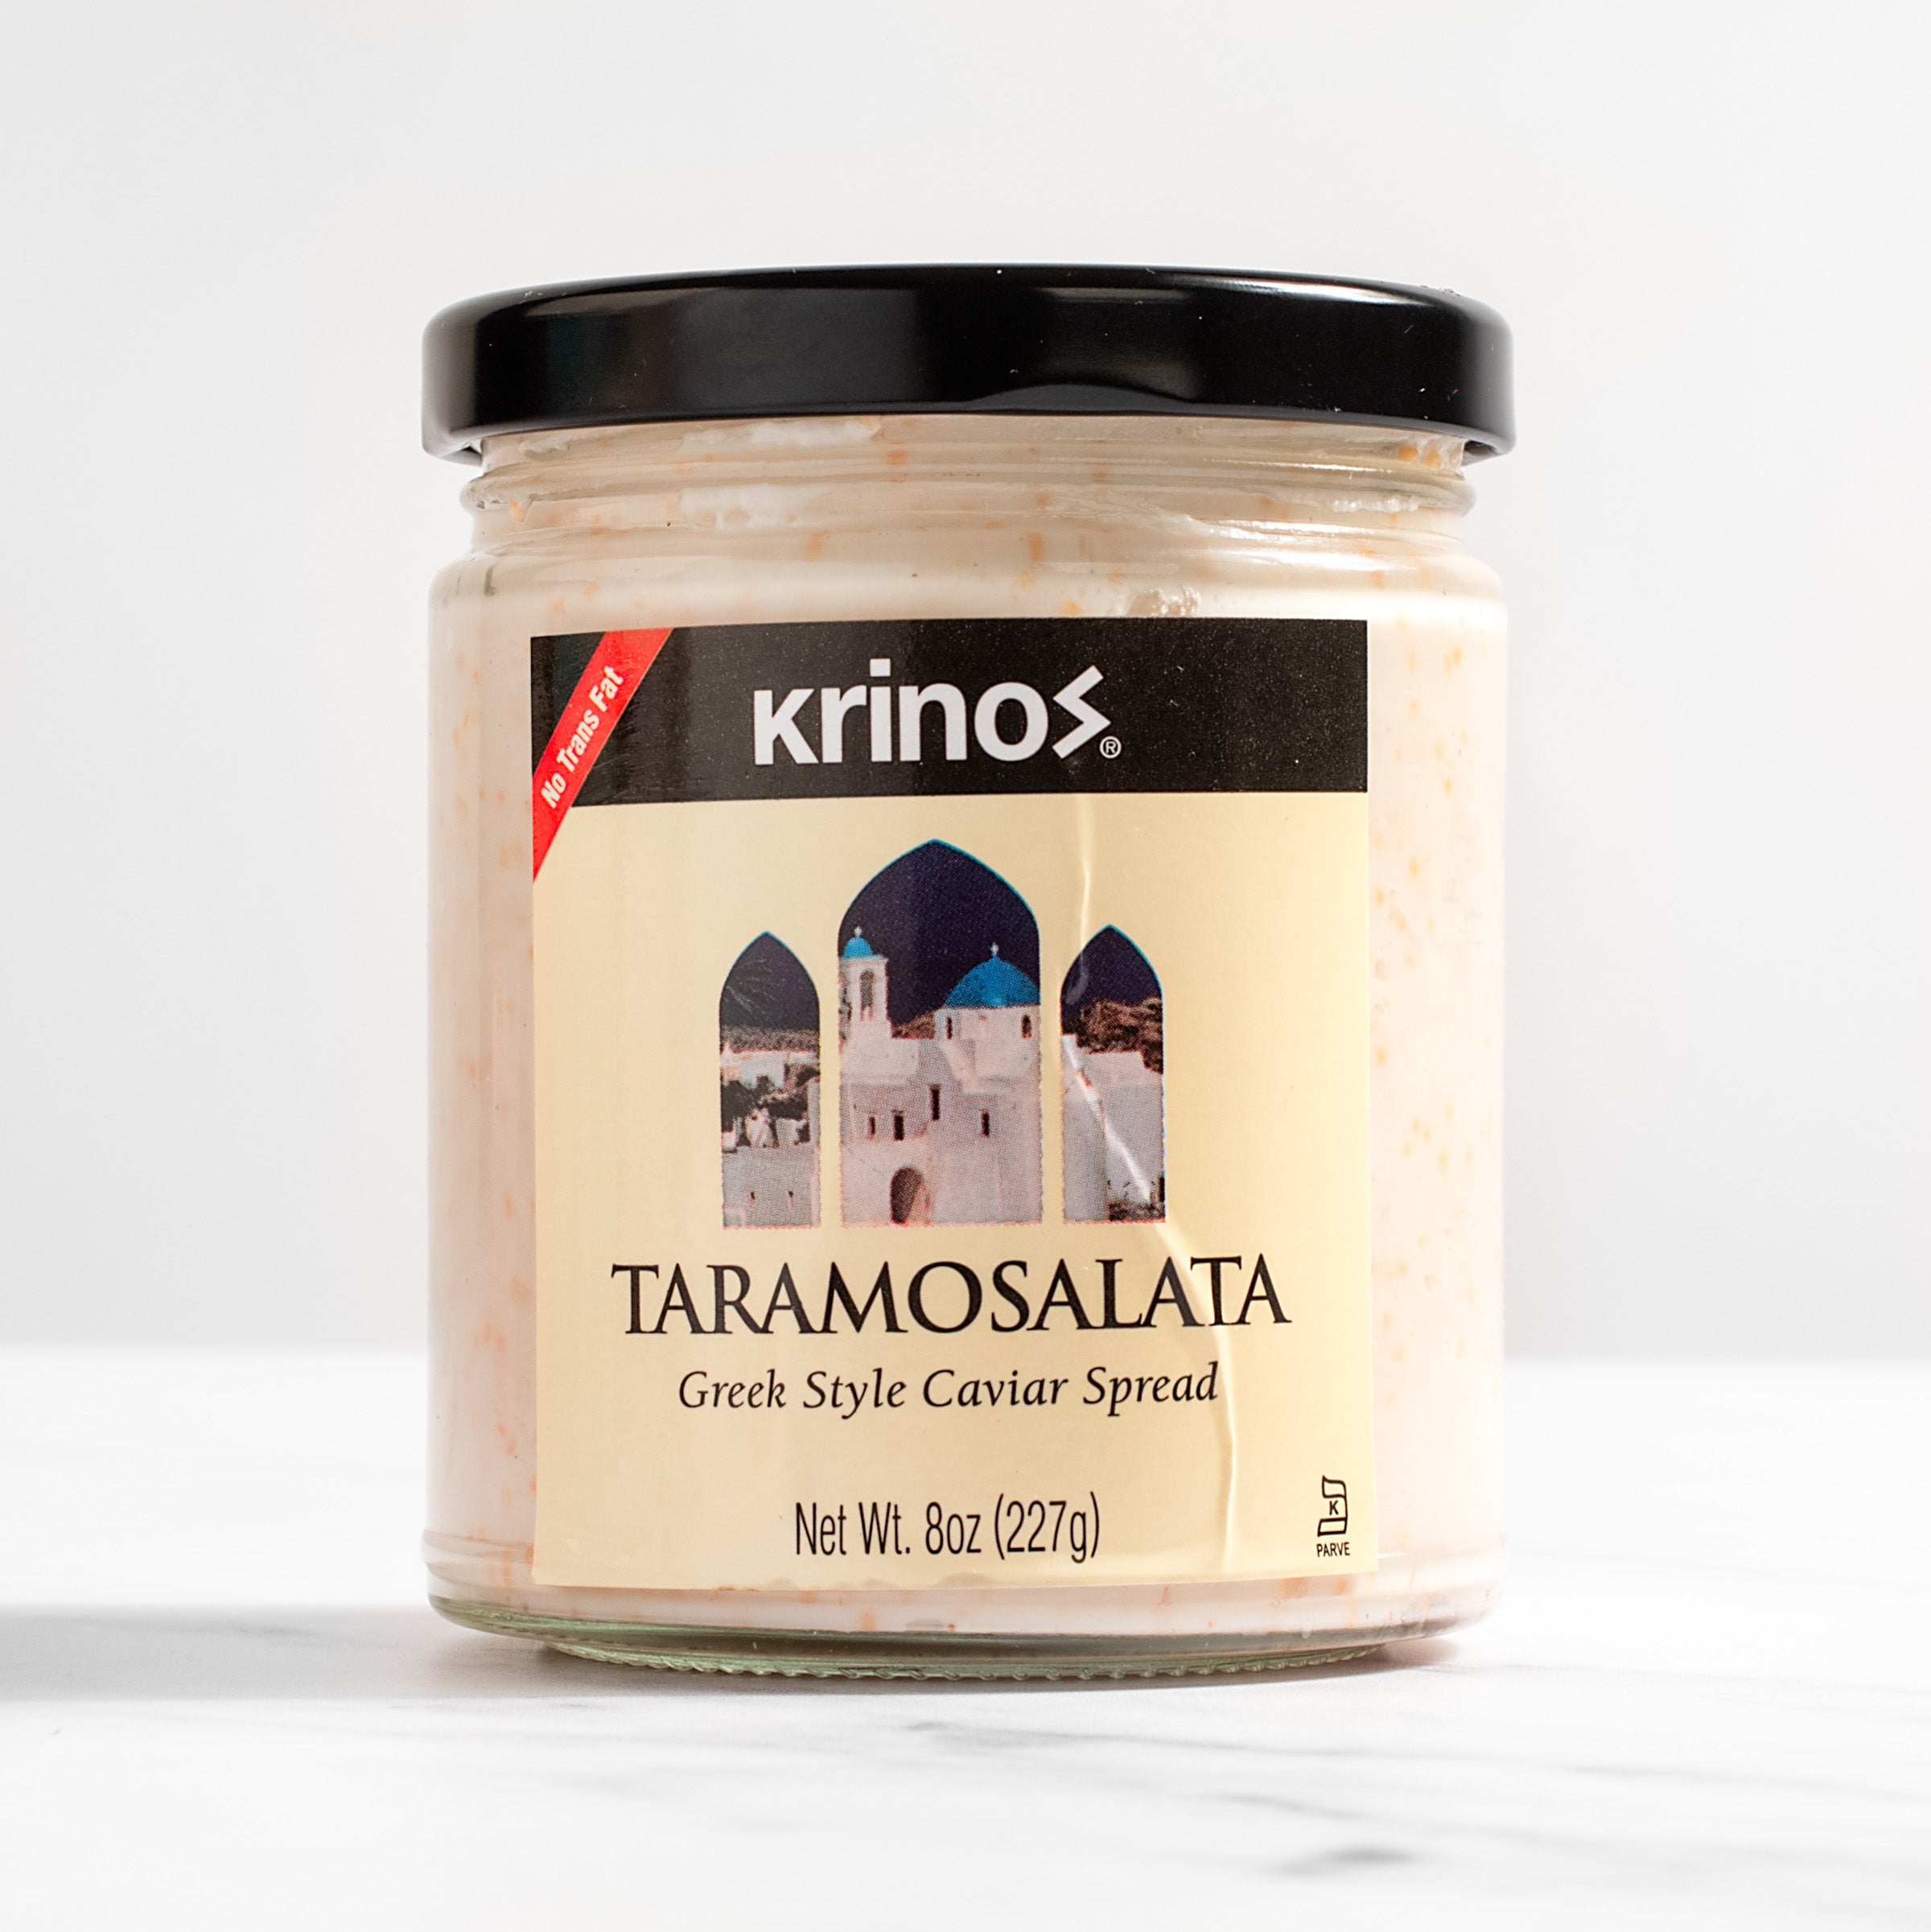 igourmet_1822_Taramosalata - Greek Style Caviar Spread_Krinos_Caviar & Roe